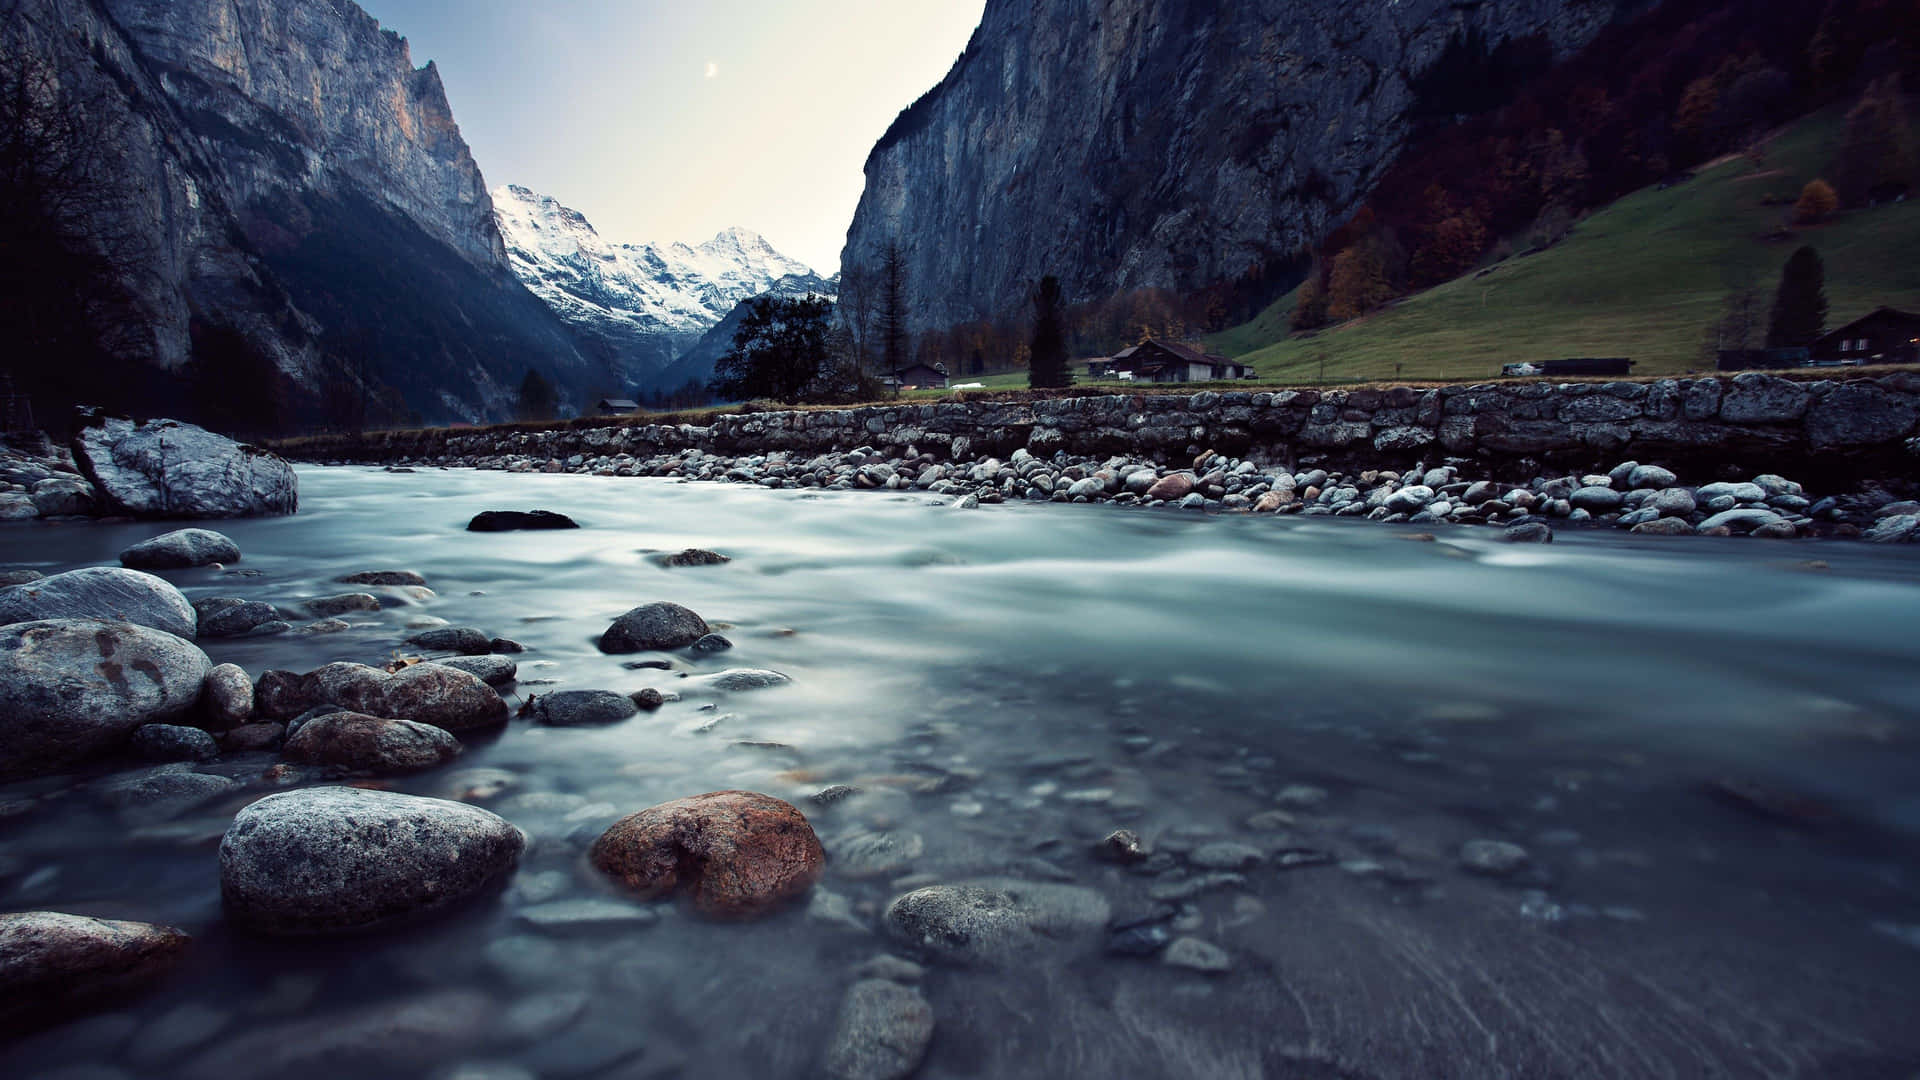 River In Valley 4K Ultra HD Landscape Wallpaper